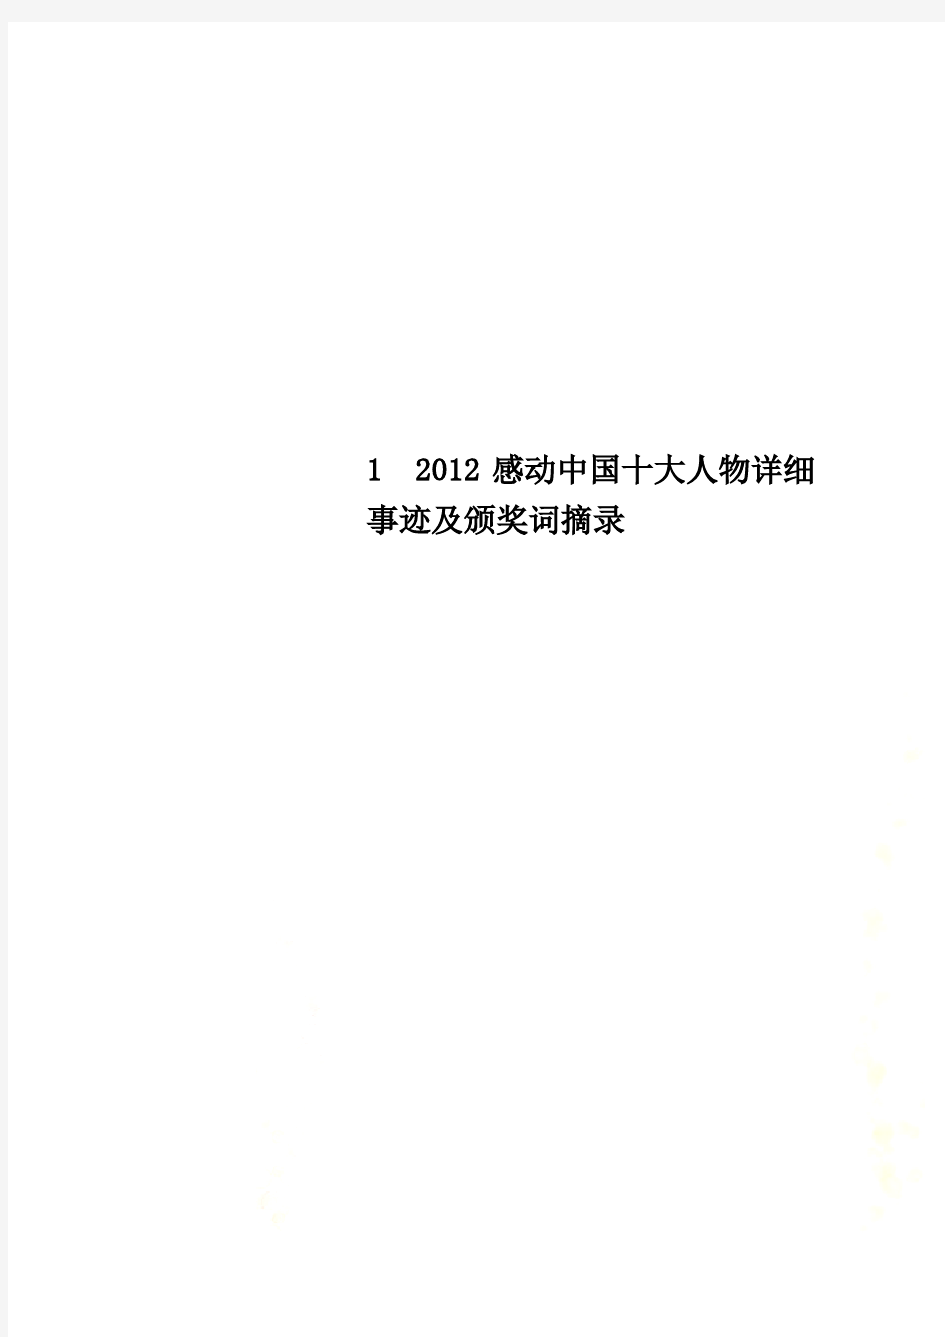 1  2012感动中国十大人物详细事迹及颁奖词摘录